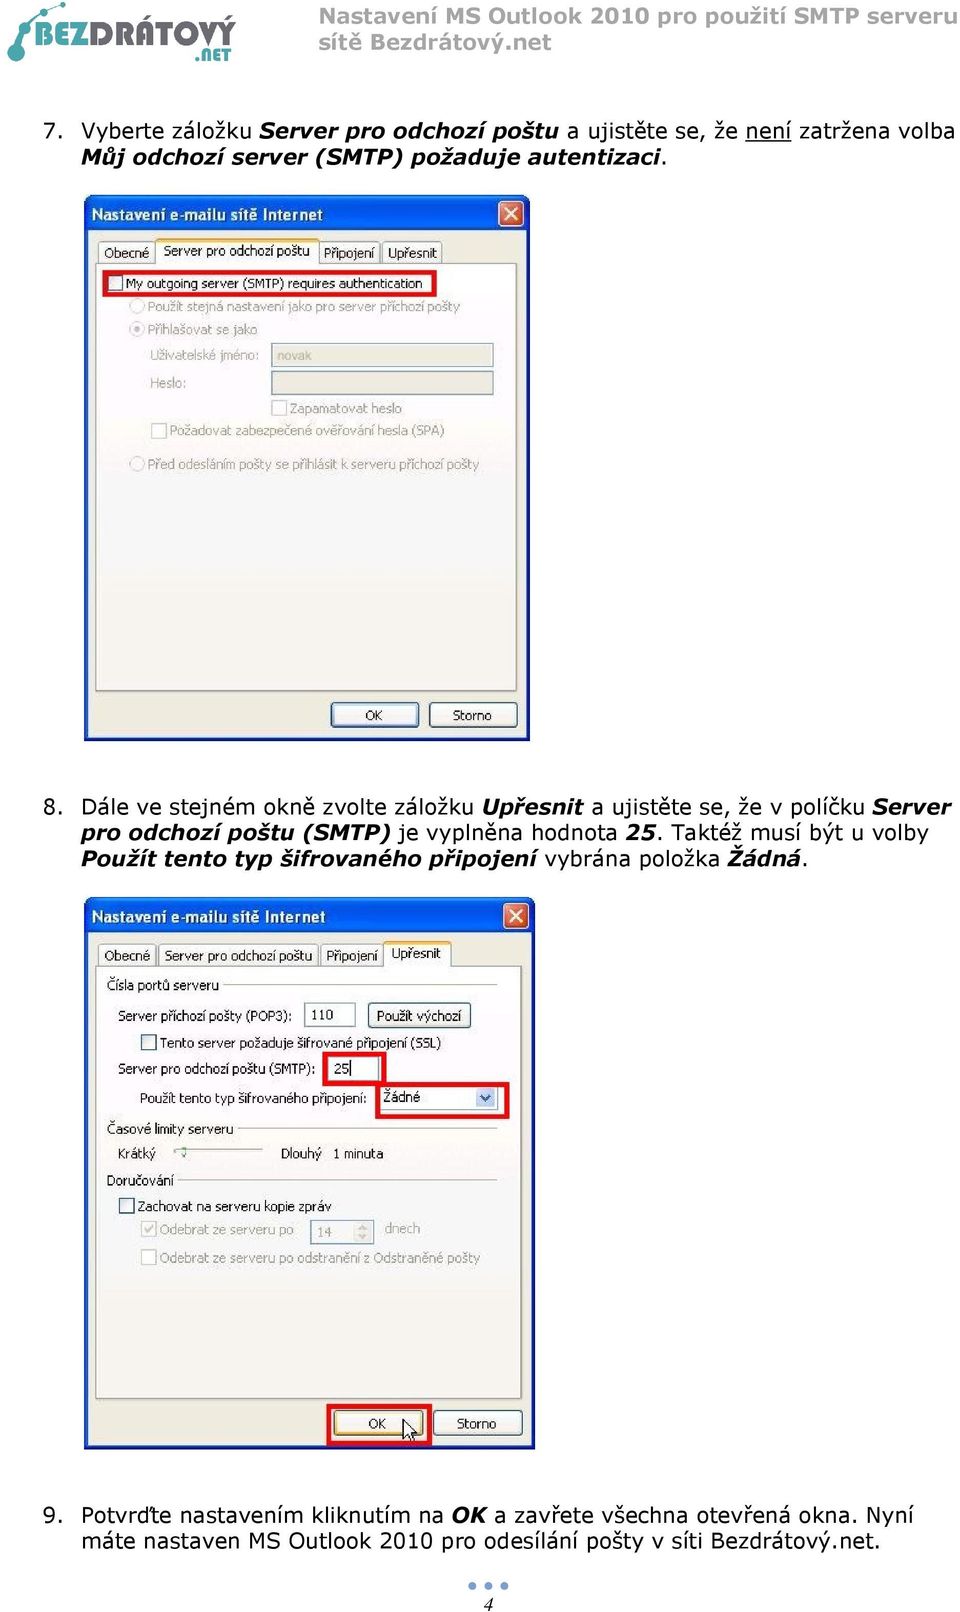 Dále ve stejném okně zvolte záložku Upřesnit a ujistěte se, že v políčku Server pro odchozí poštu (SMTP) je vyplněna hodnota